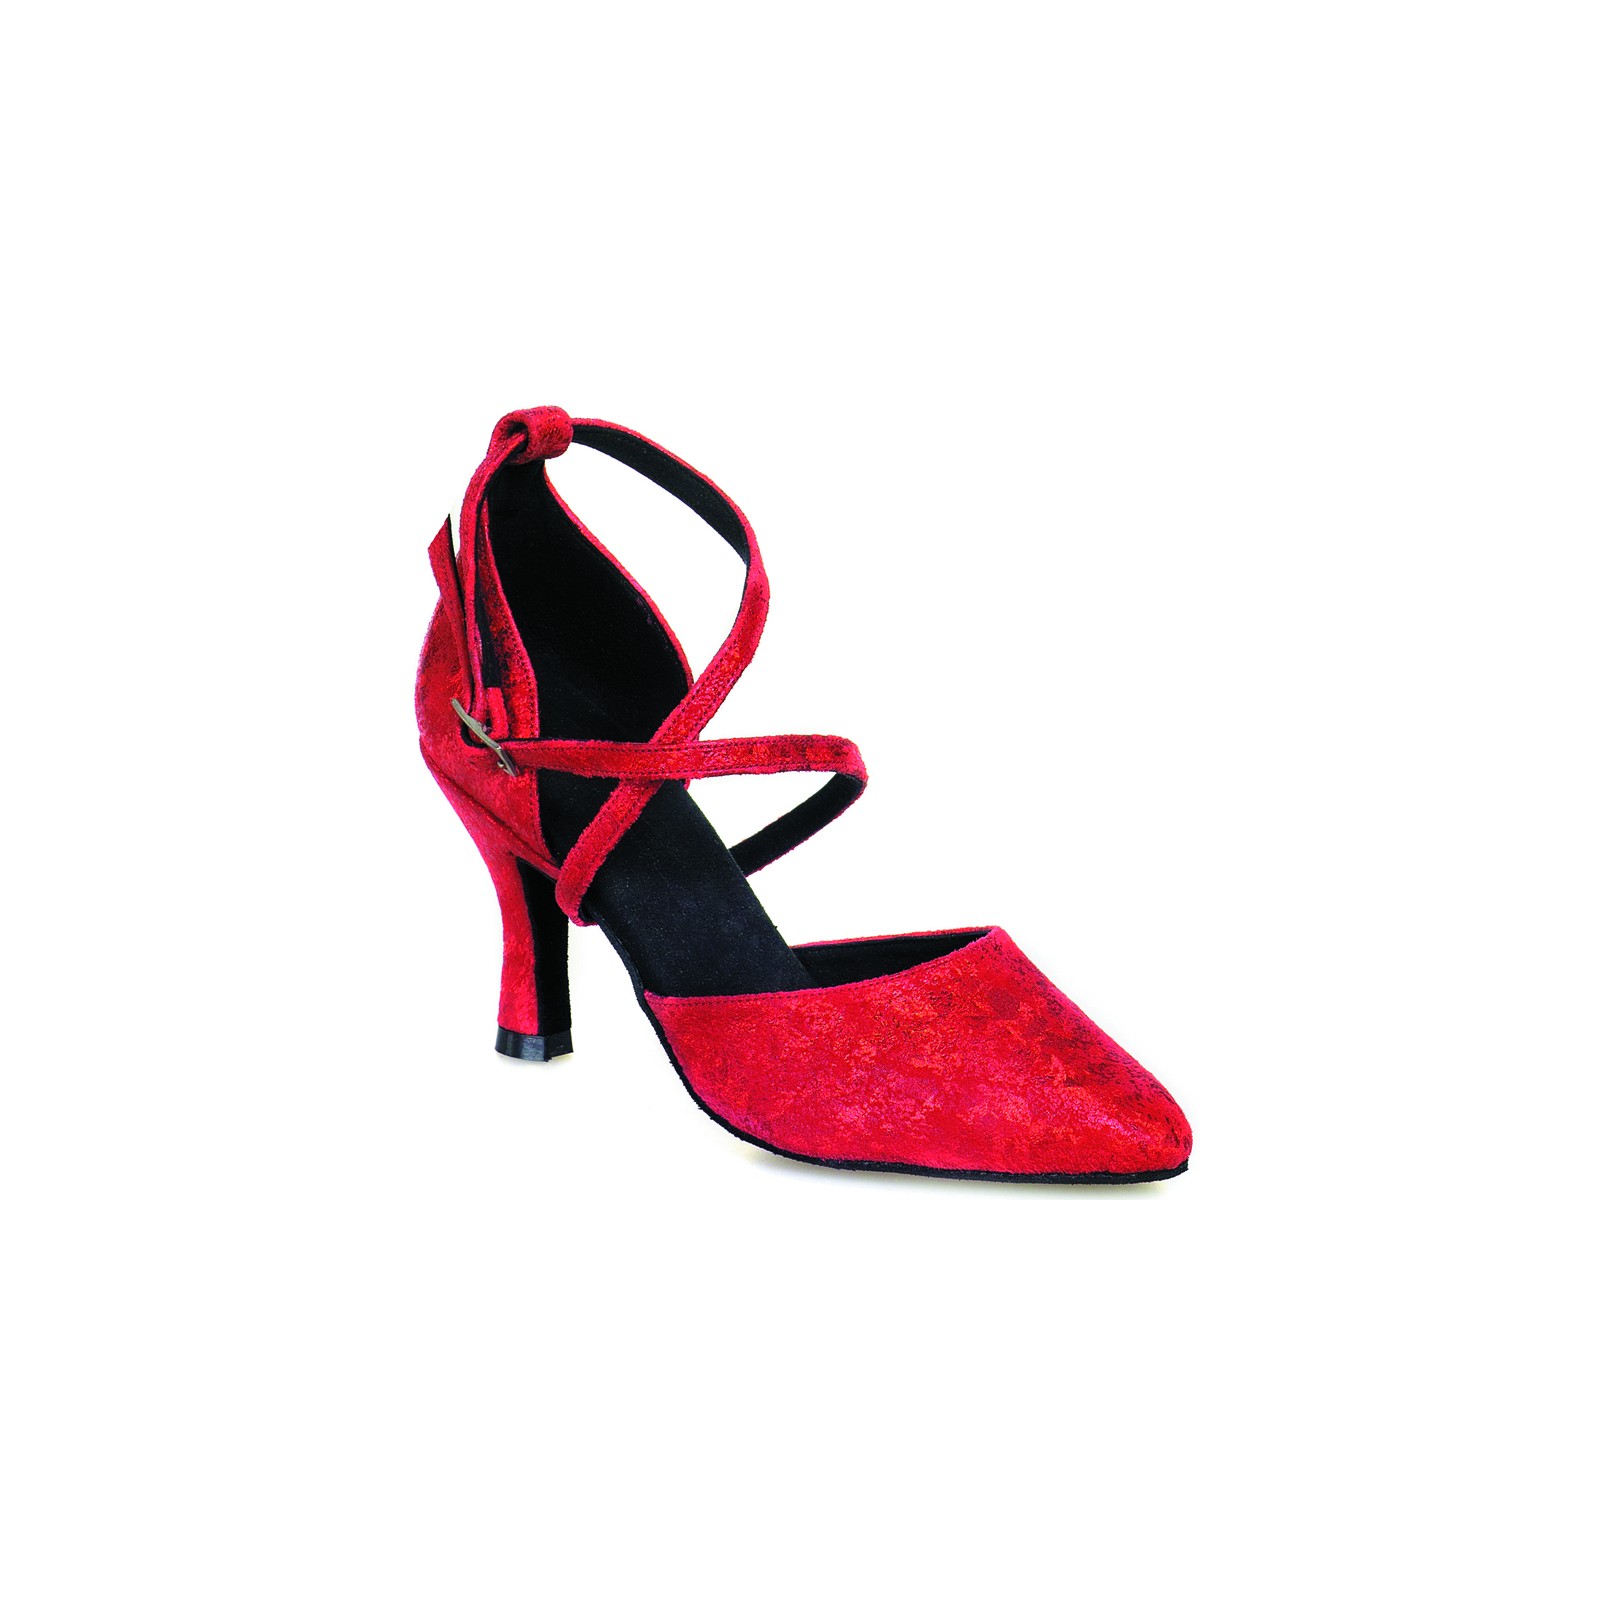 Rummos Femmes Chaussures de Danse R530 205 Largeur régulière Fabriqué au Portugal Cuir Rouge Histrix 5 cm 50R Flare Talon